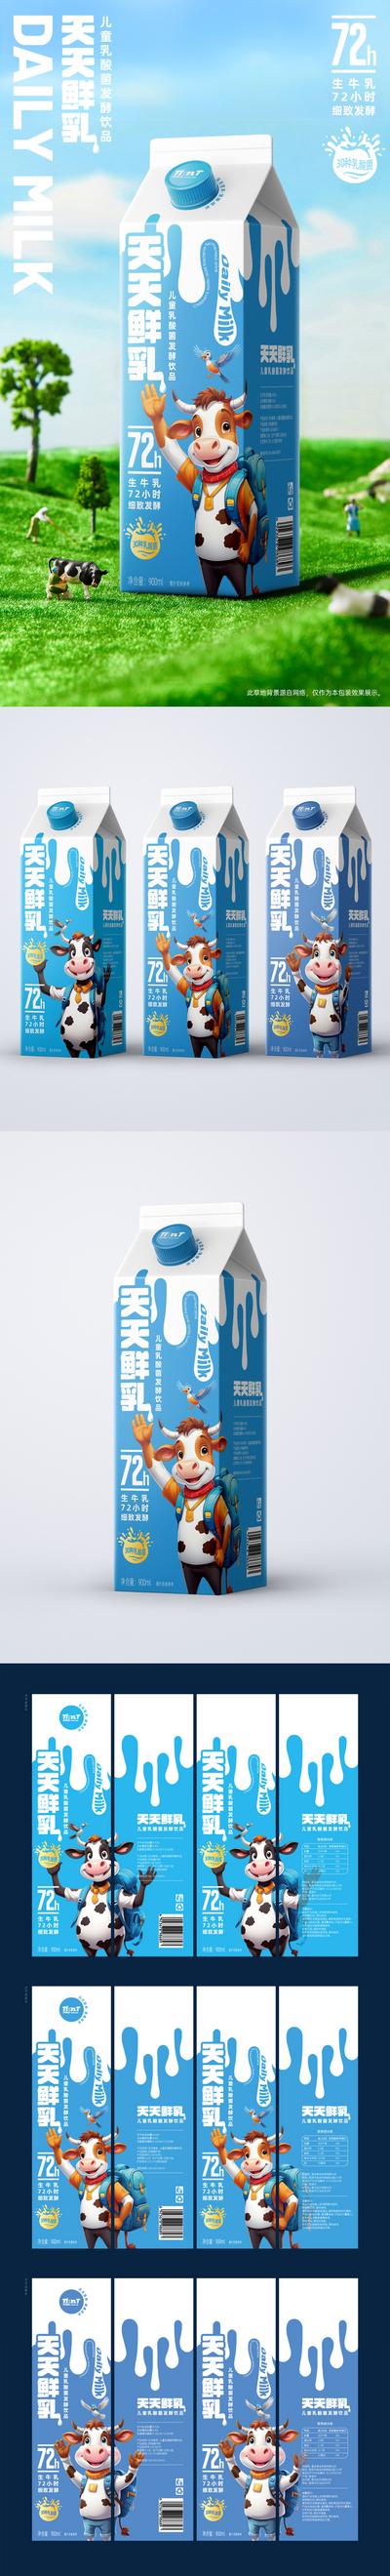 南门网 广告 海报 插画 包装 创意 牛奶 乳酸菌 奶制品 益生菌 卡通 奶牛 小牛 鲜奶 饮料 学生 酸奶 样机 效果图 系列 品质